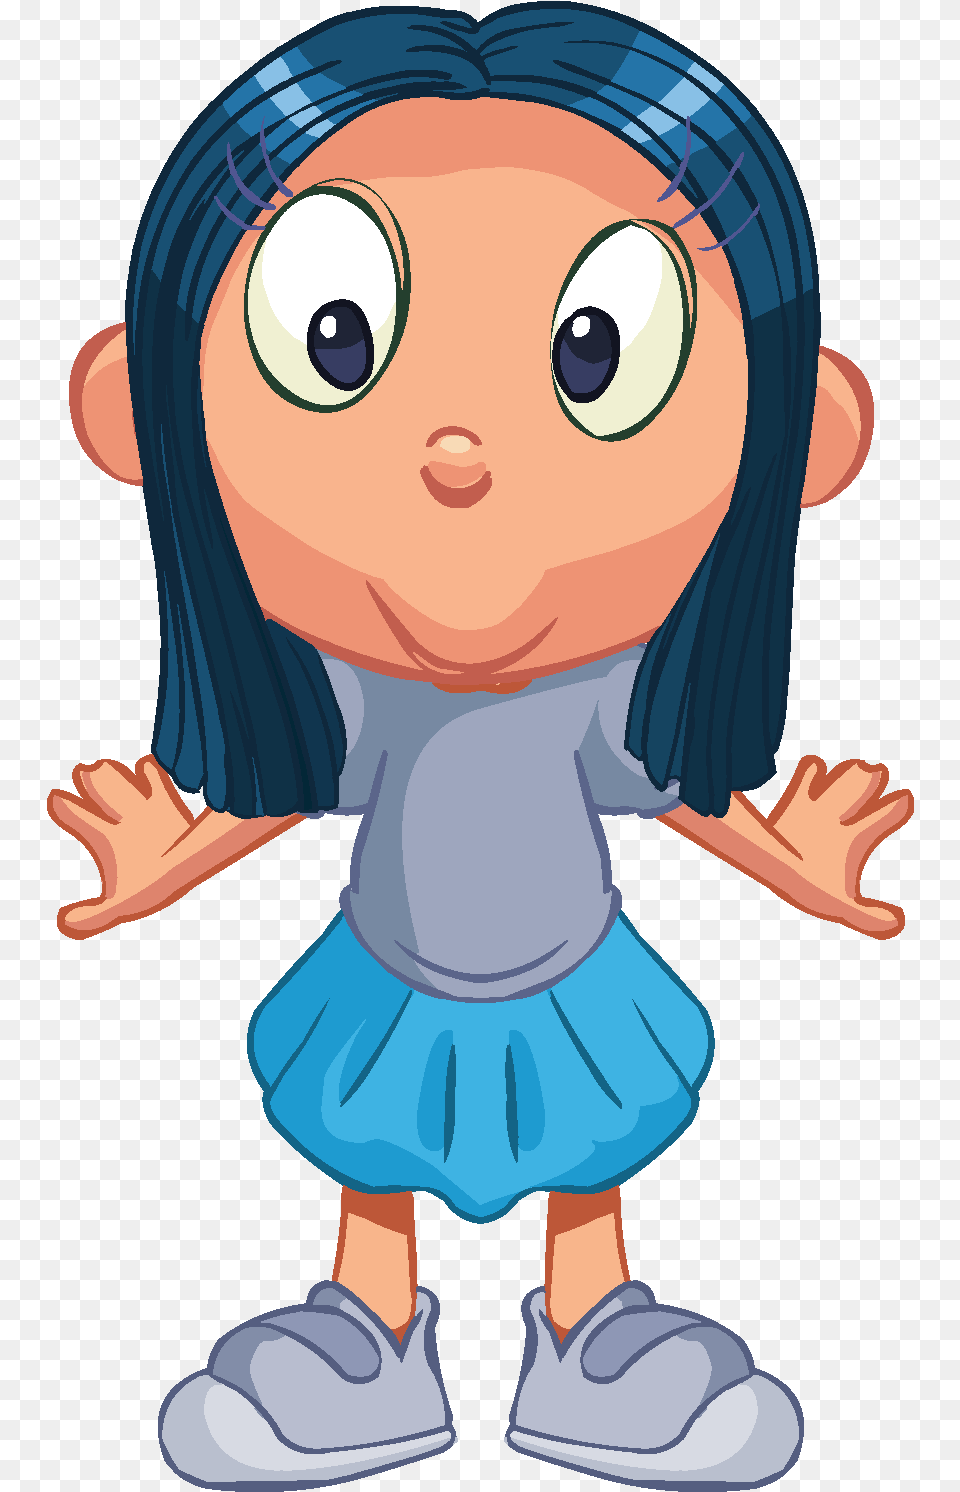 Cartoon Children Kids People 10 Download Vector Trastorno Deficit De Atencion E Hiperactividad, Baby, Person, Face, Head Free Png